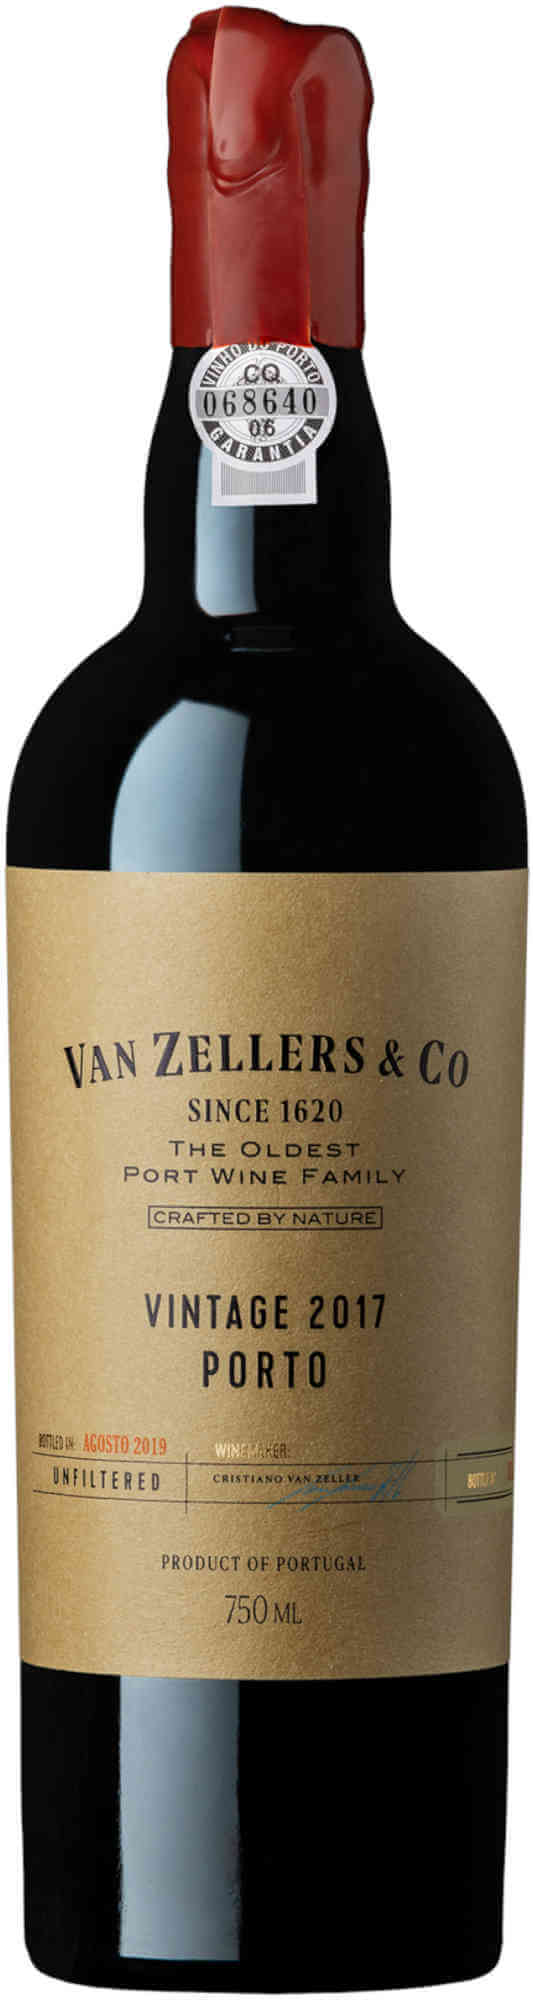 Van-Zellers-Vintage-Port-2017